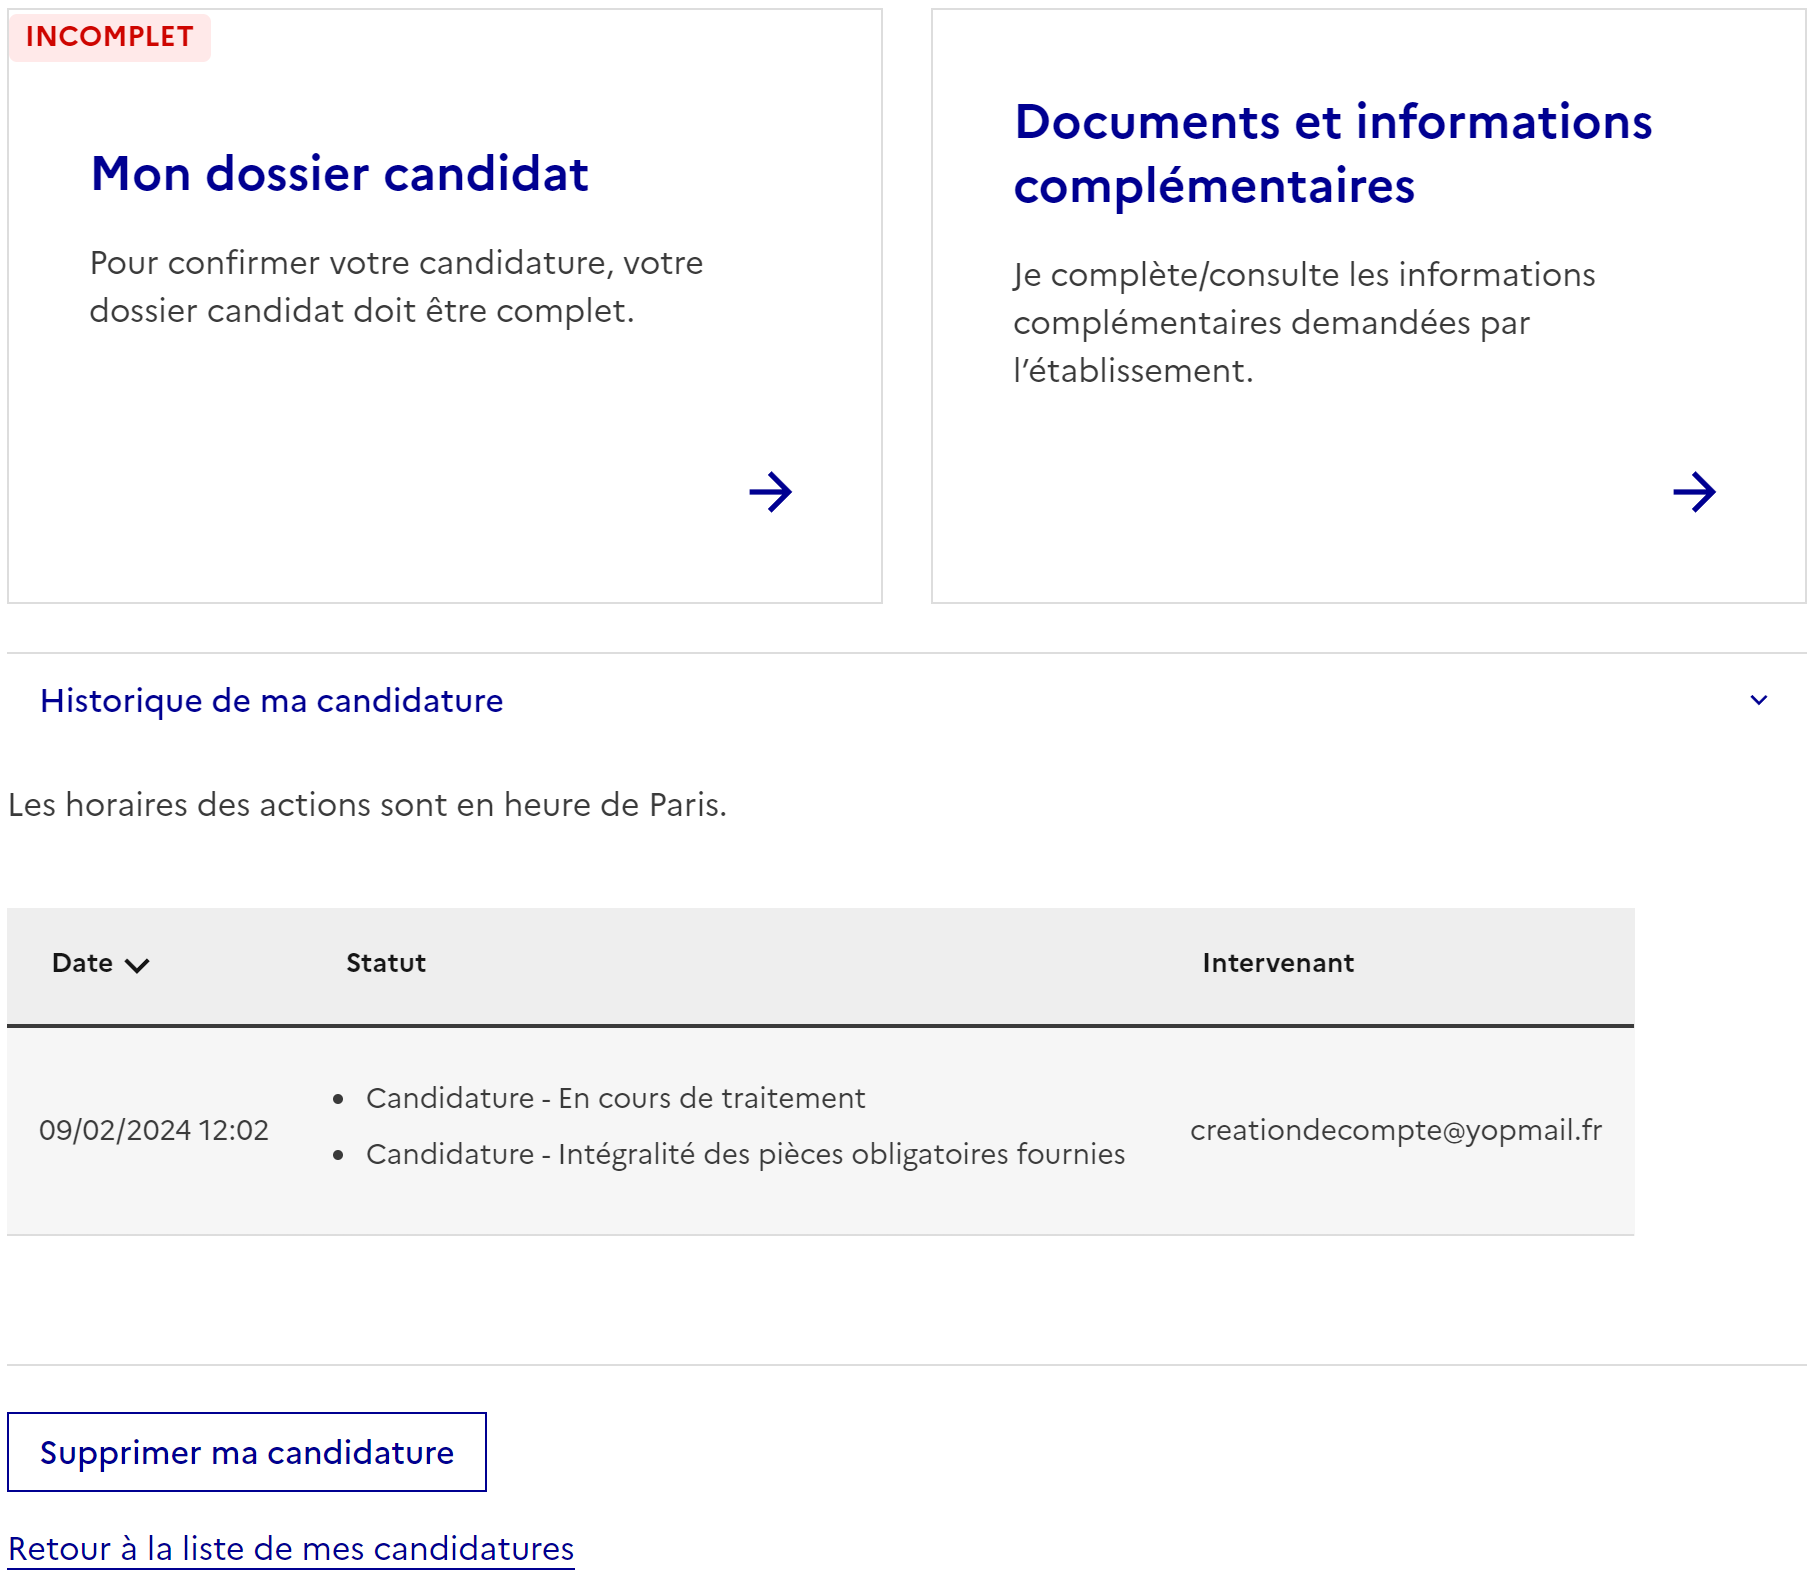 Détail de la candidature : liens "Mon dossier candidat", "Documents et informations complémentaires", historique.